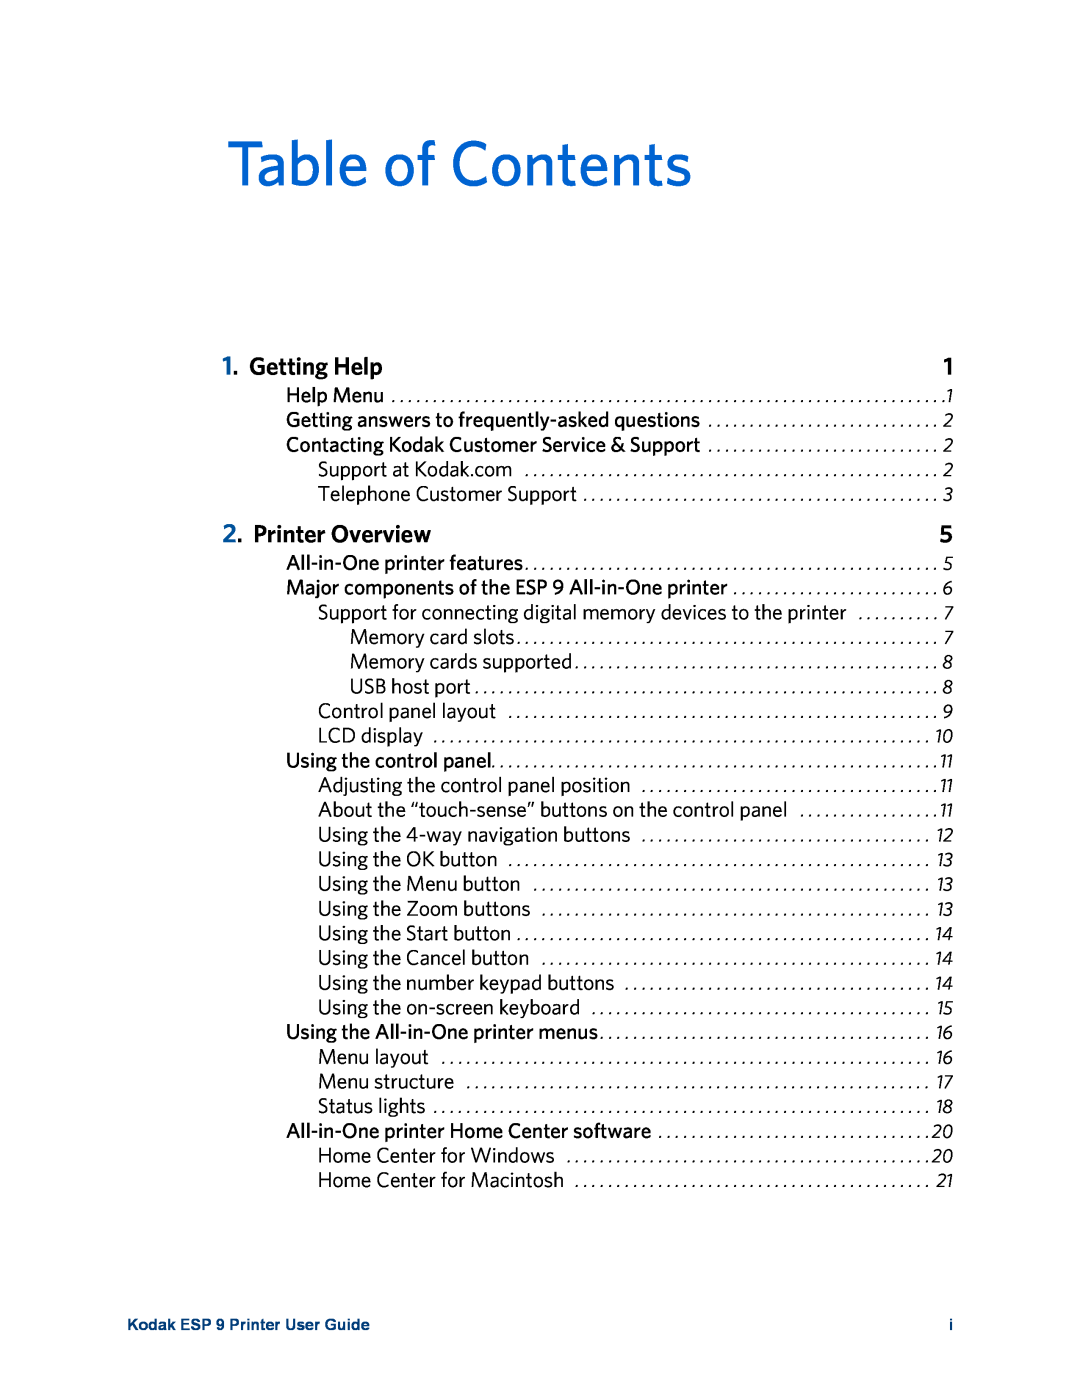 Kodak manual Table of Contents, Getting Help, Printer Overview, Kodak ESP 9 Printer User Guide 